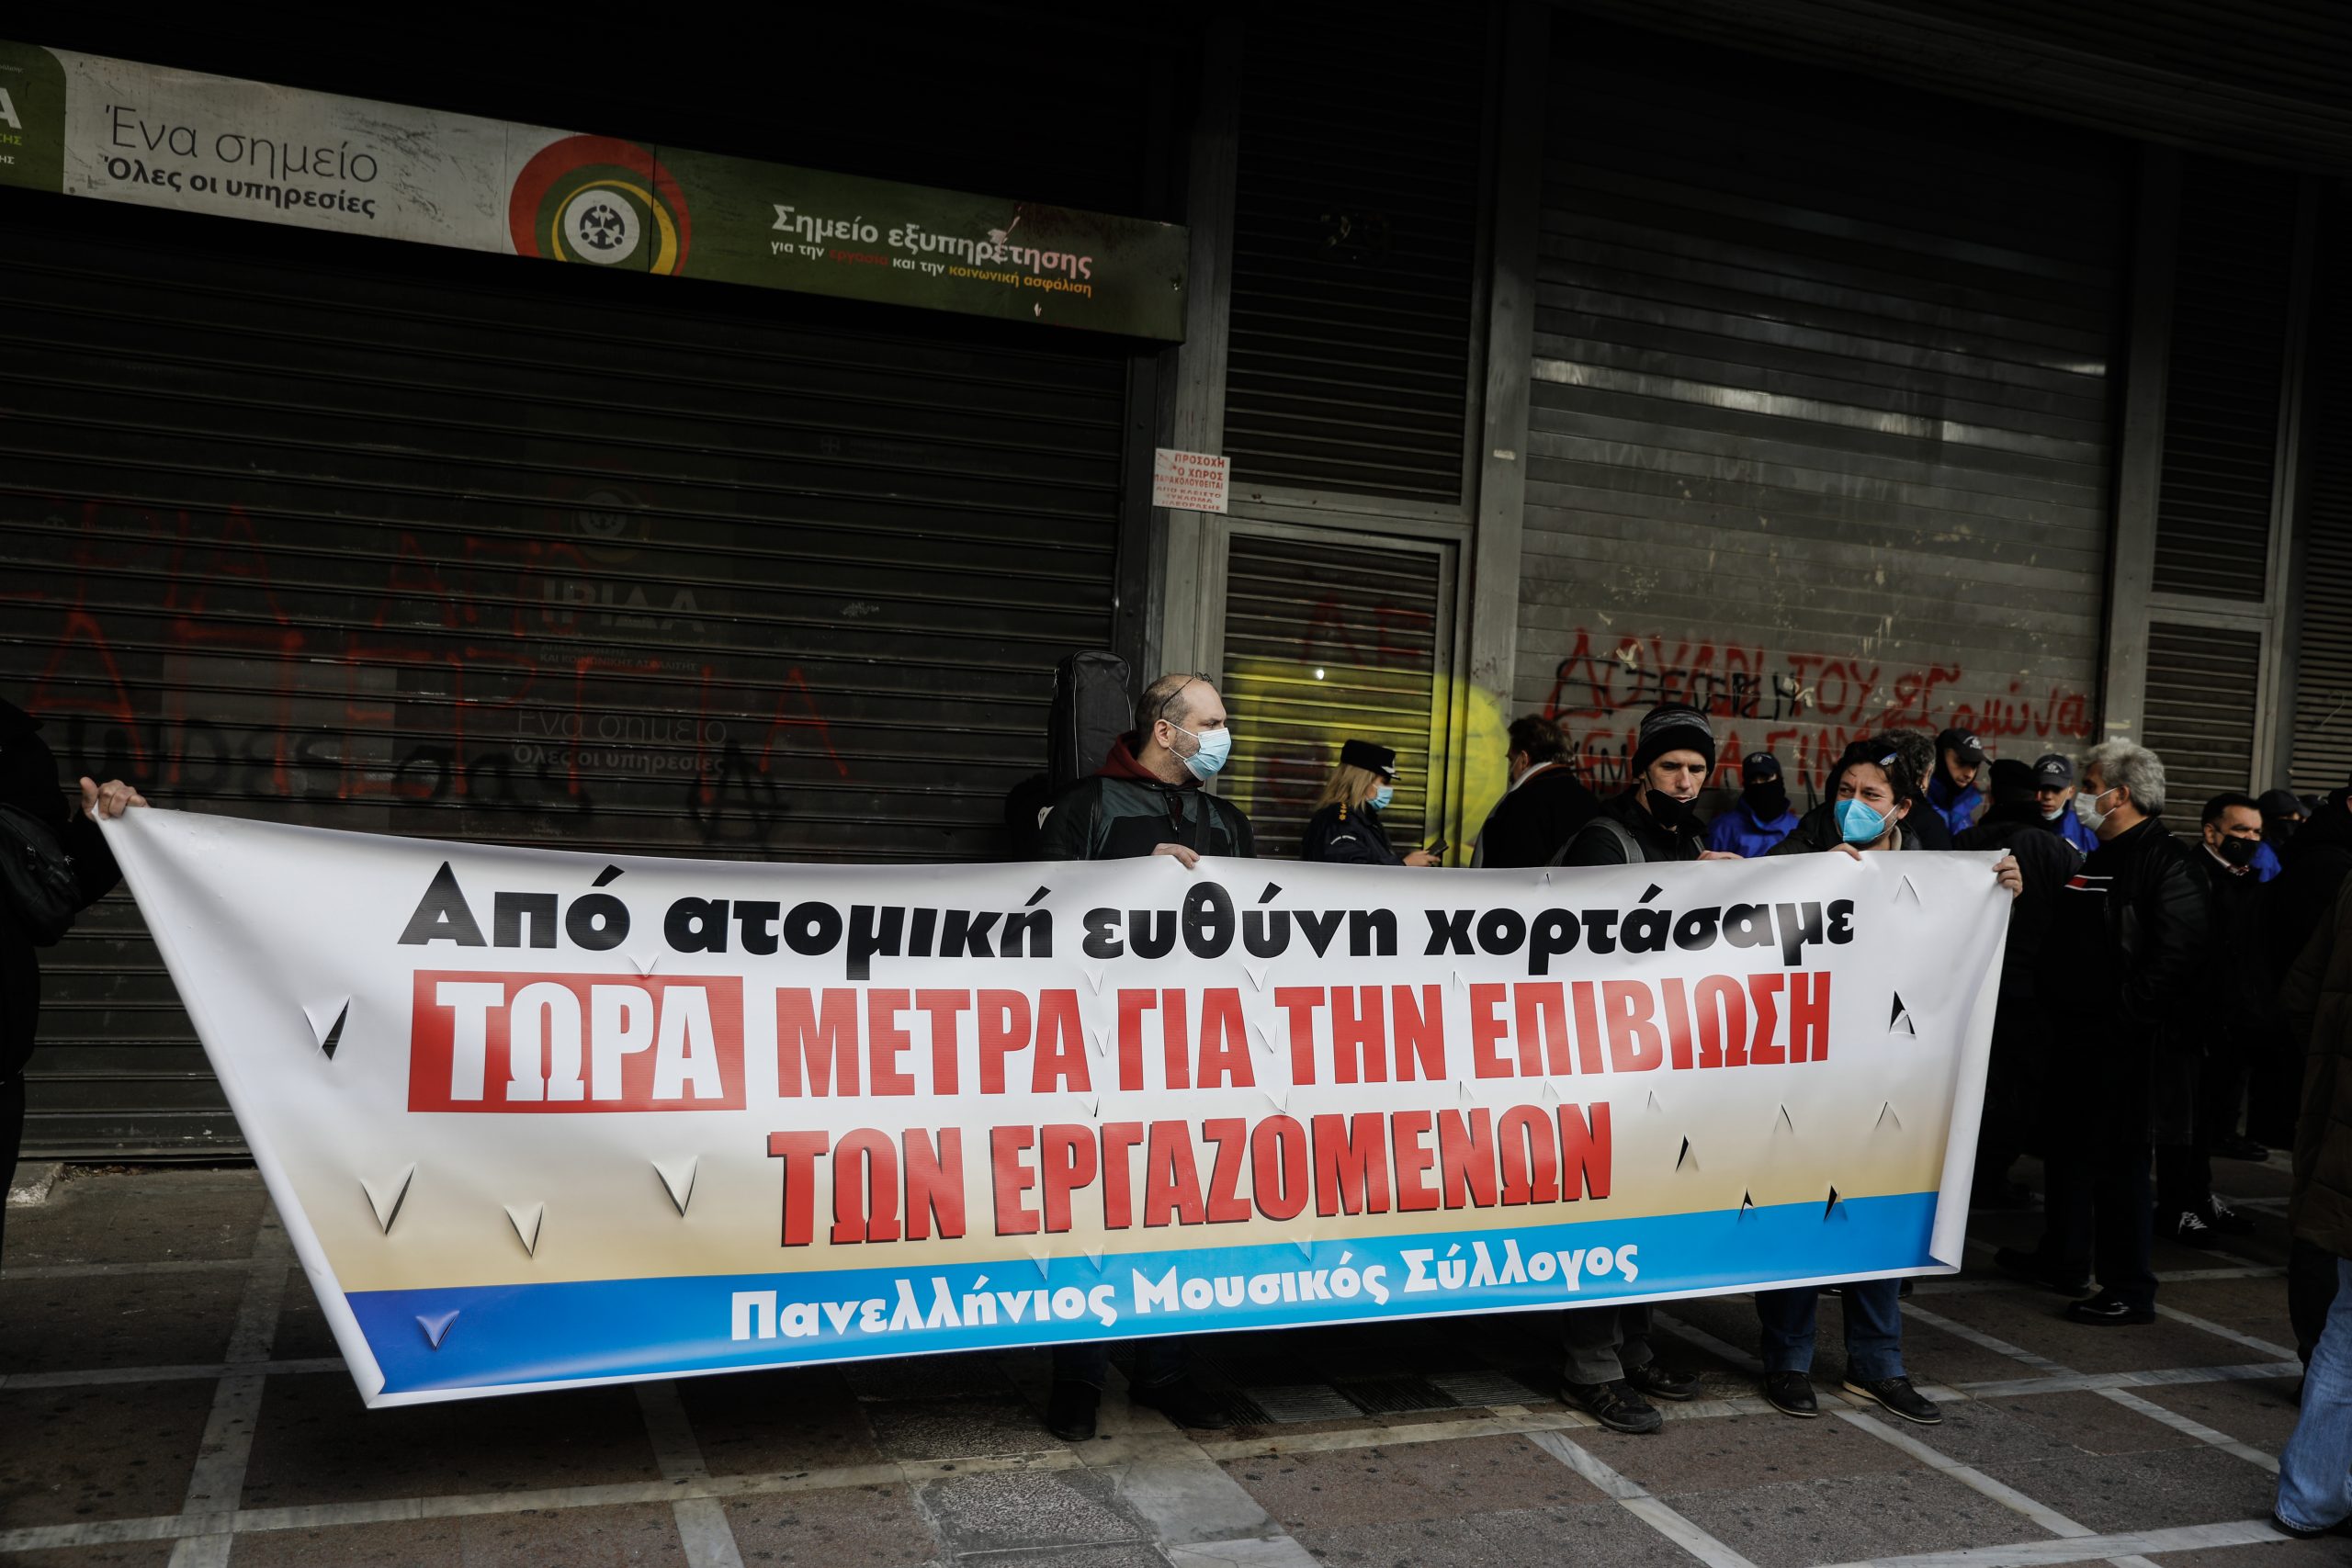 Ξεσπούν οι μουσικοί κατά της κυβέρνησης: Ατομική ευθύνη το μόνο μέτρο - Δεν θα το ανεχθούμε άλλο! | Eretikos.gr